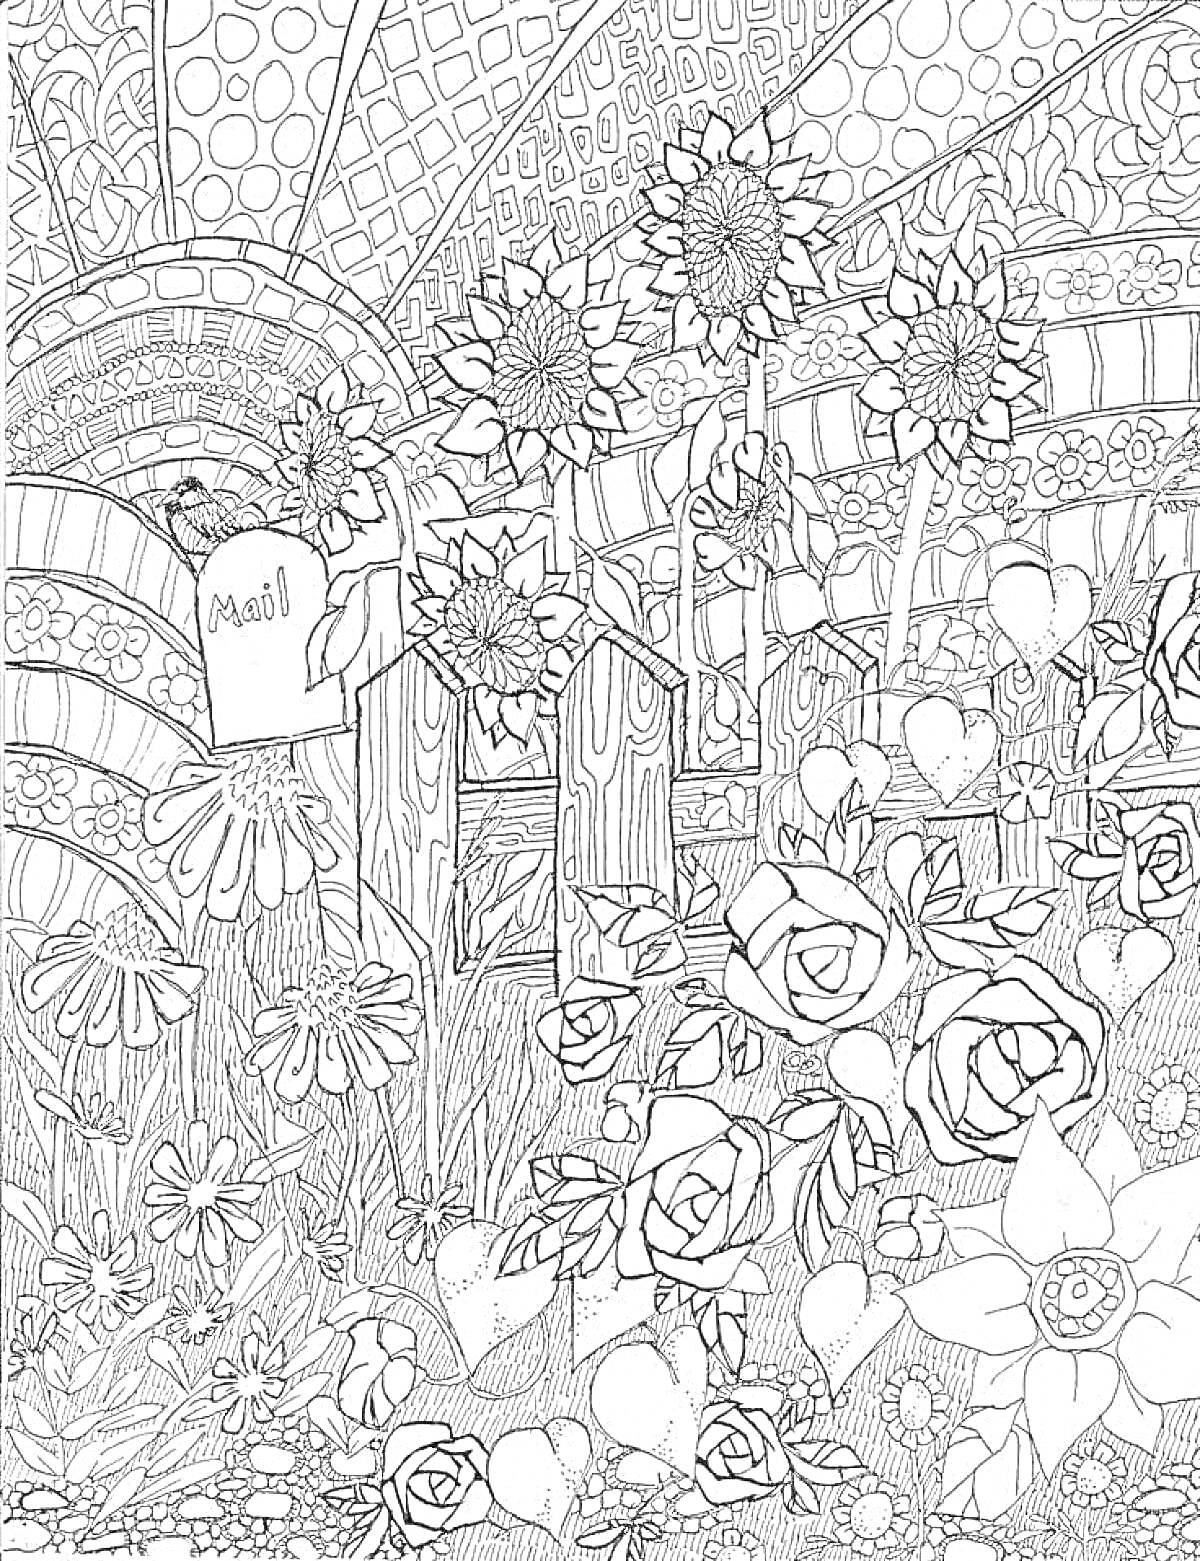 На раскраске изображено: Антистресс, Подсолнухи, Полевые цветы, Розы, Почтовый ящик, Забор, Абстрактный узор, Природа, Растения